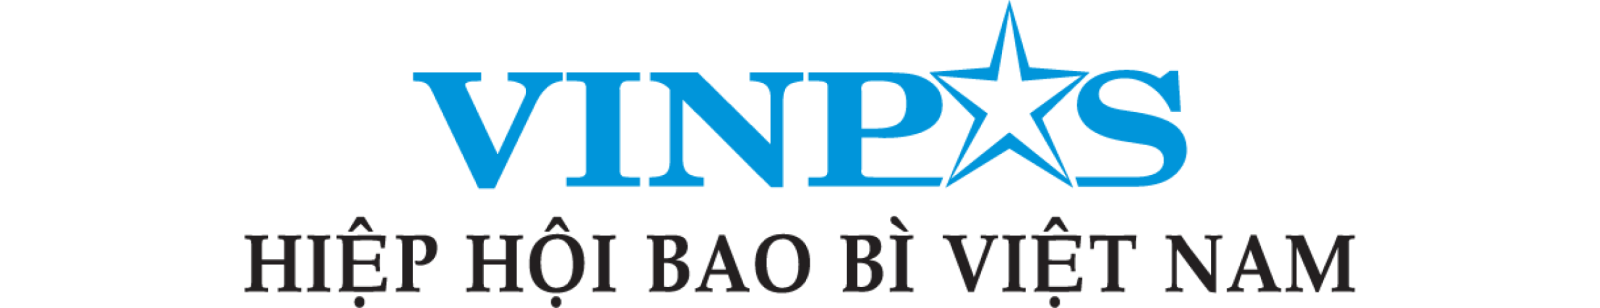 Hiệp hội Bao bì Việt Nam